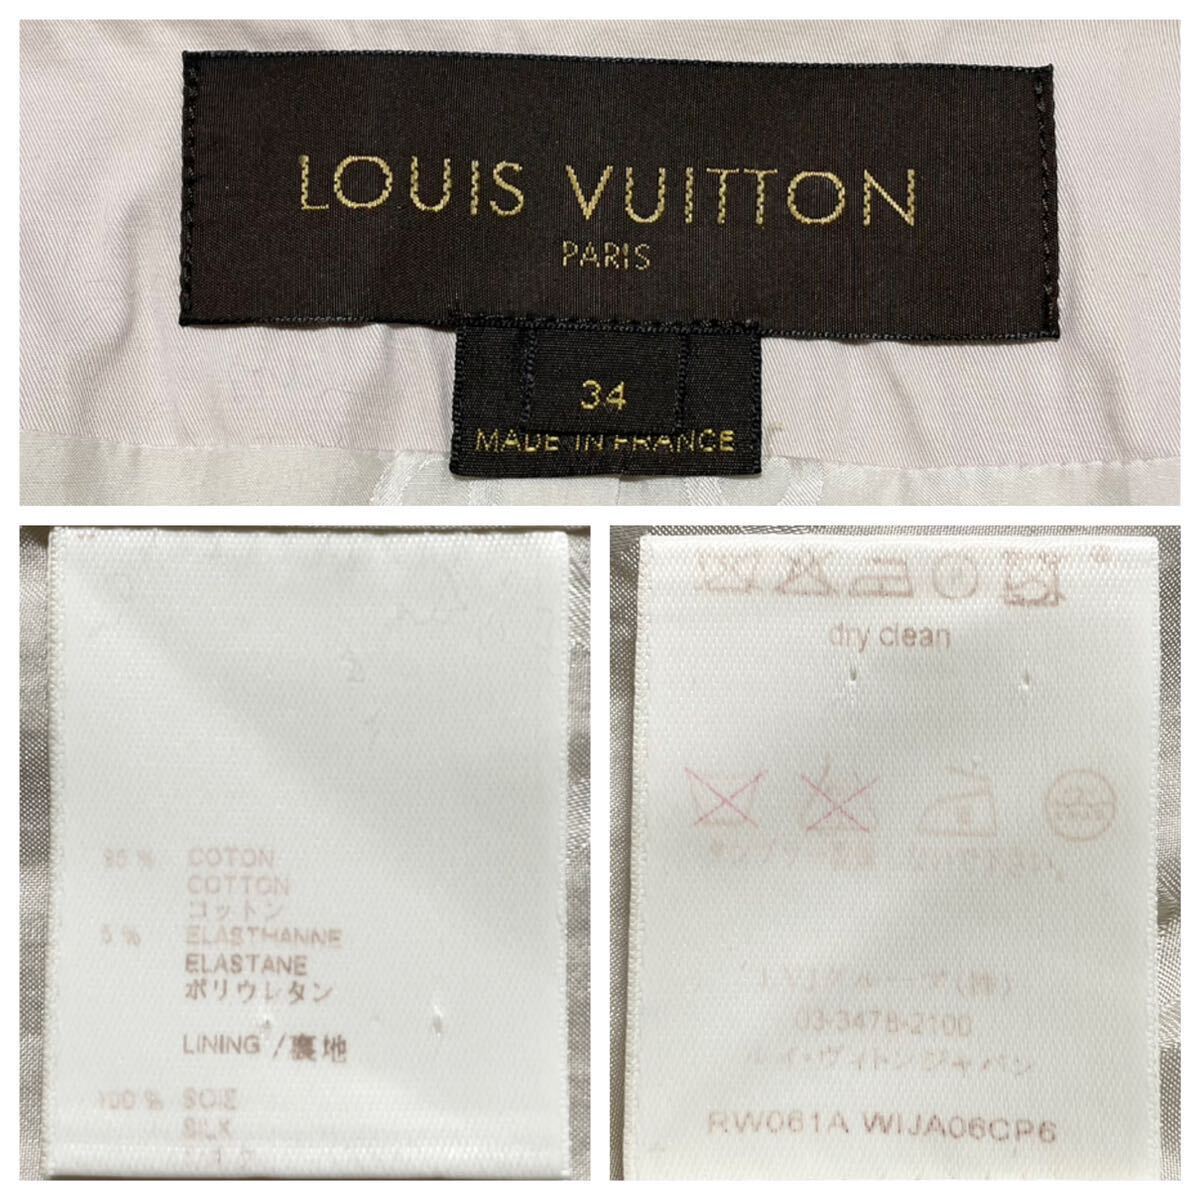  подлинный товар Louis Vuitton выполненный в строгом стиле дизайн жакет 34 свет розовый серия подкладка Logo LOUIS VUITTON